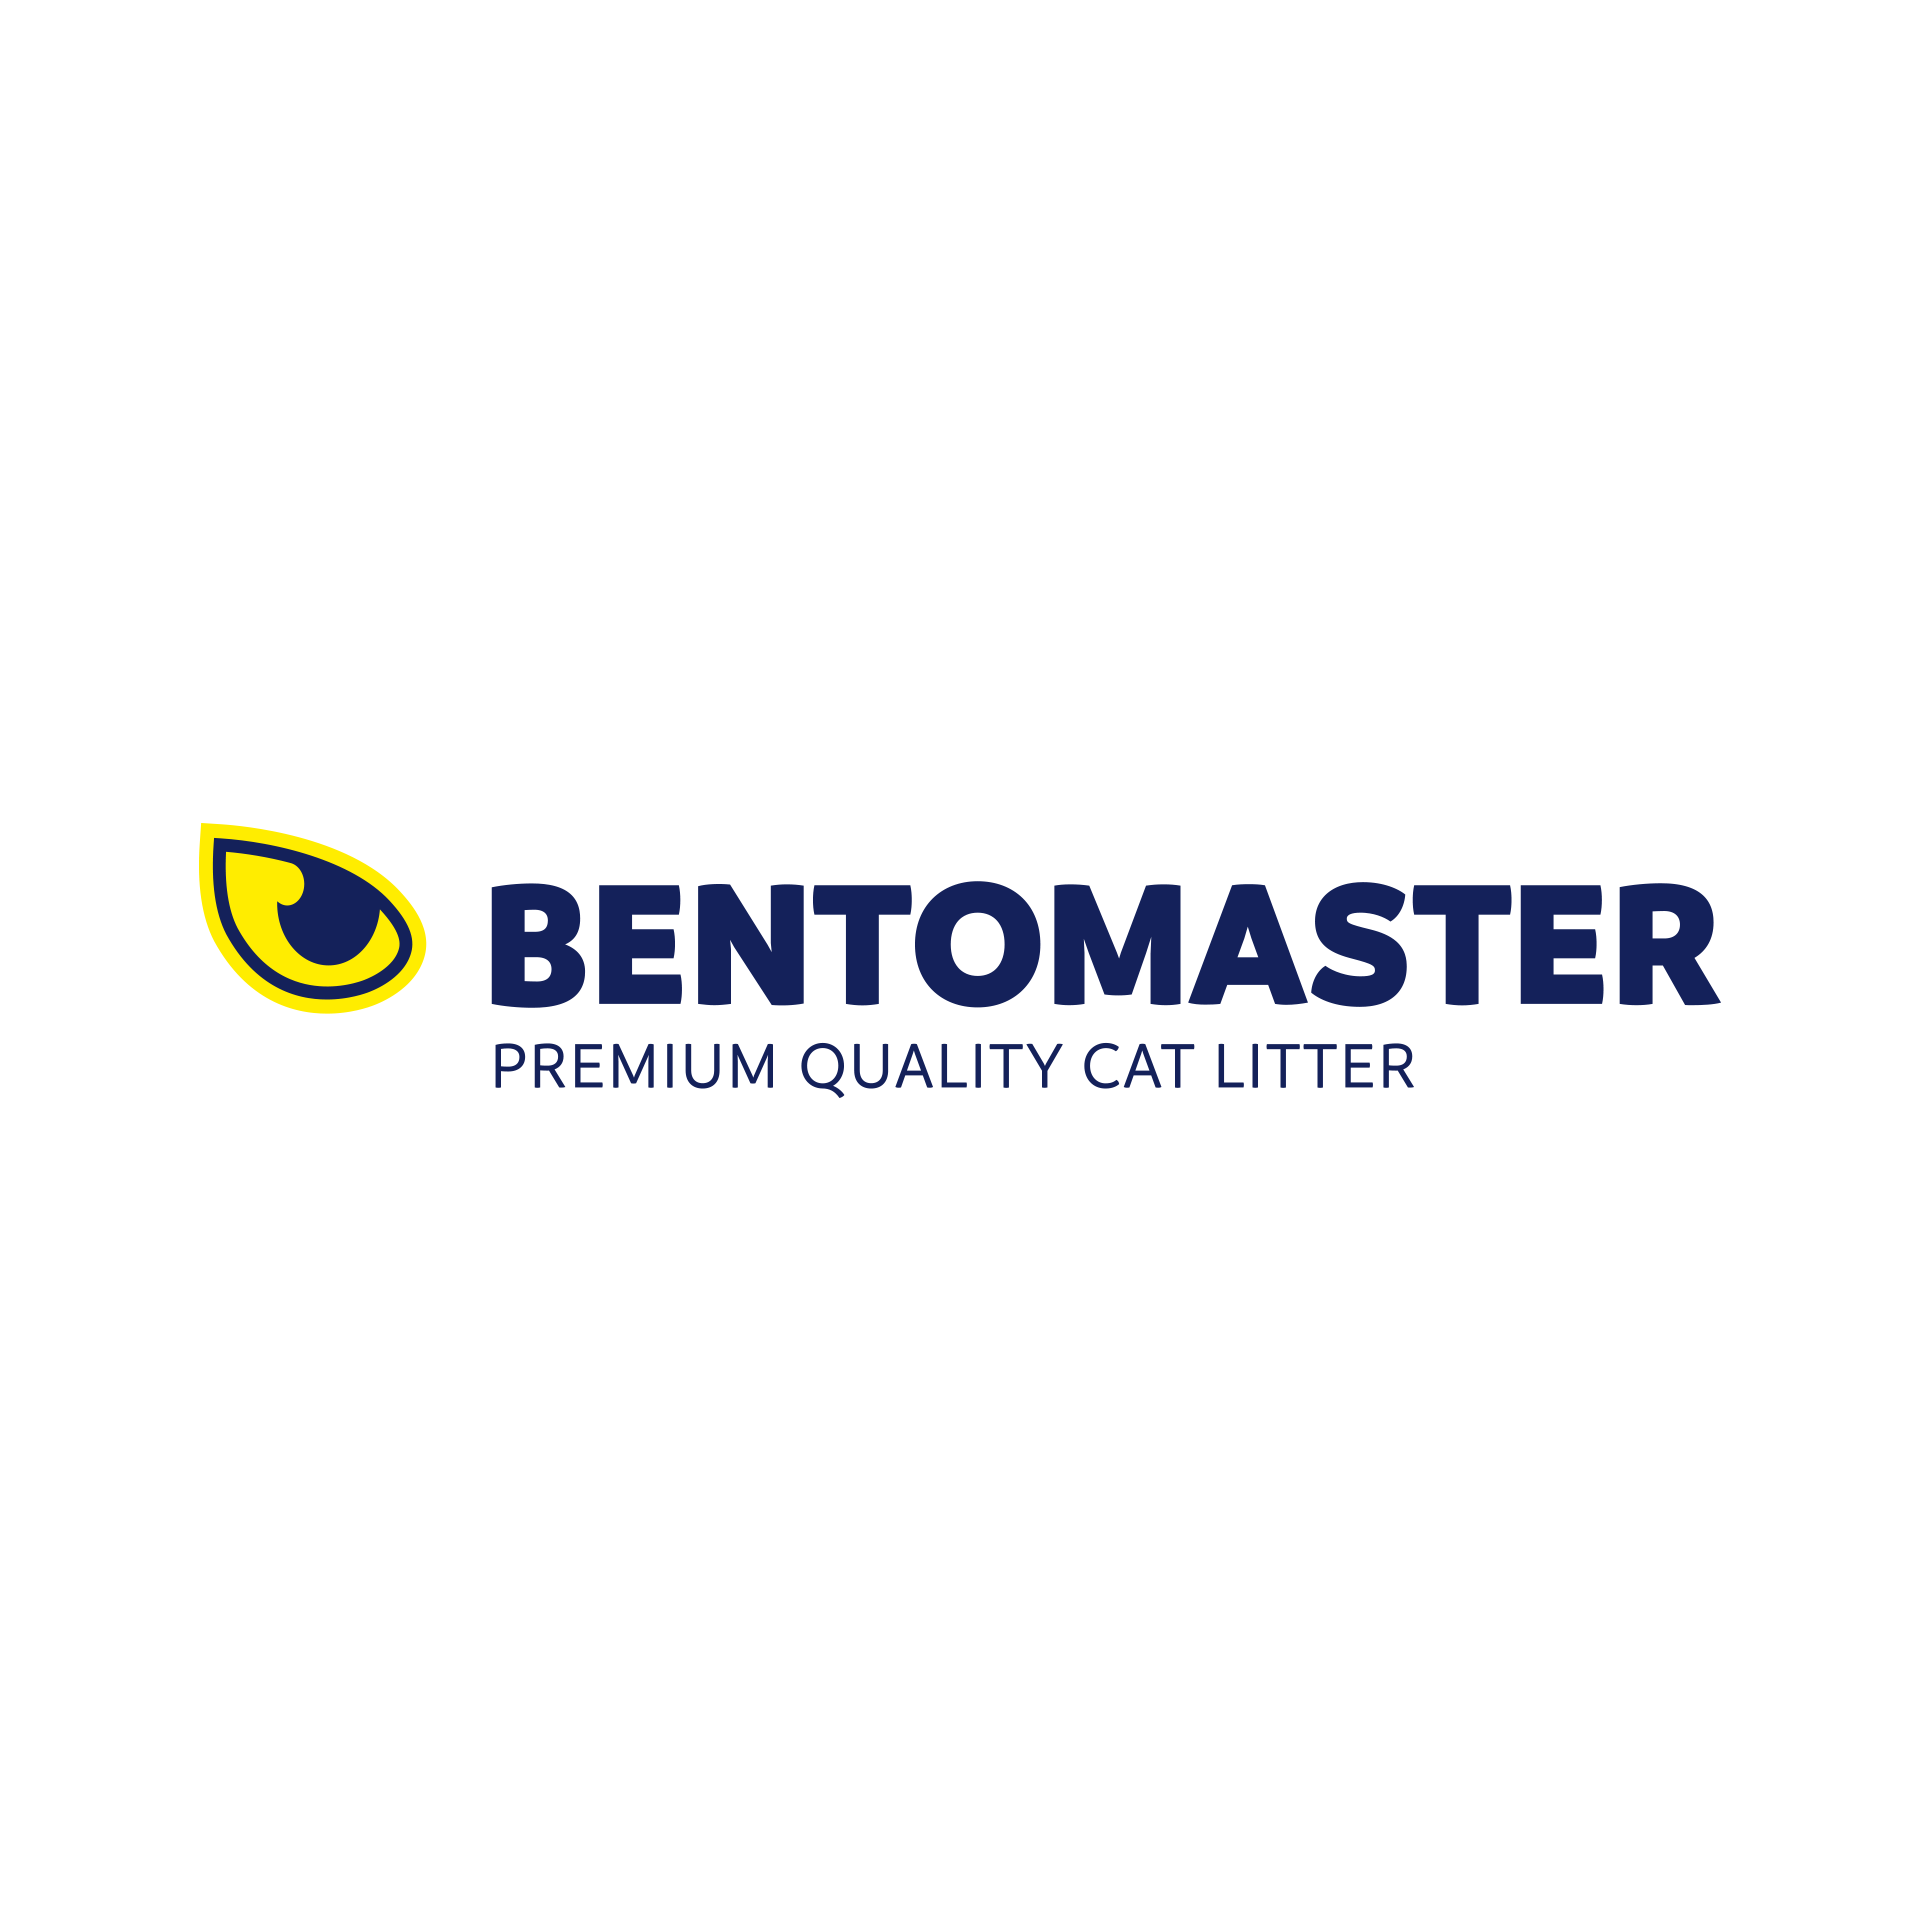 nieuwe naam en logo design voor Bentomaster